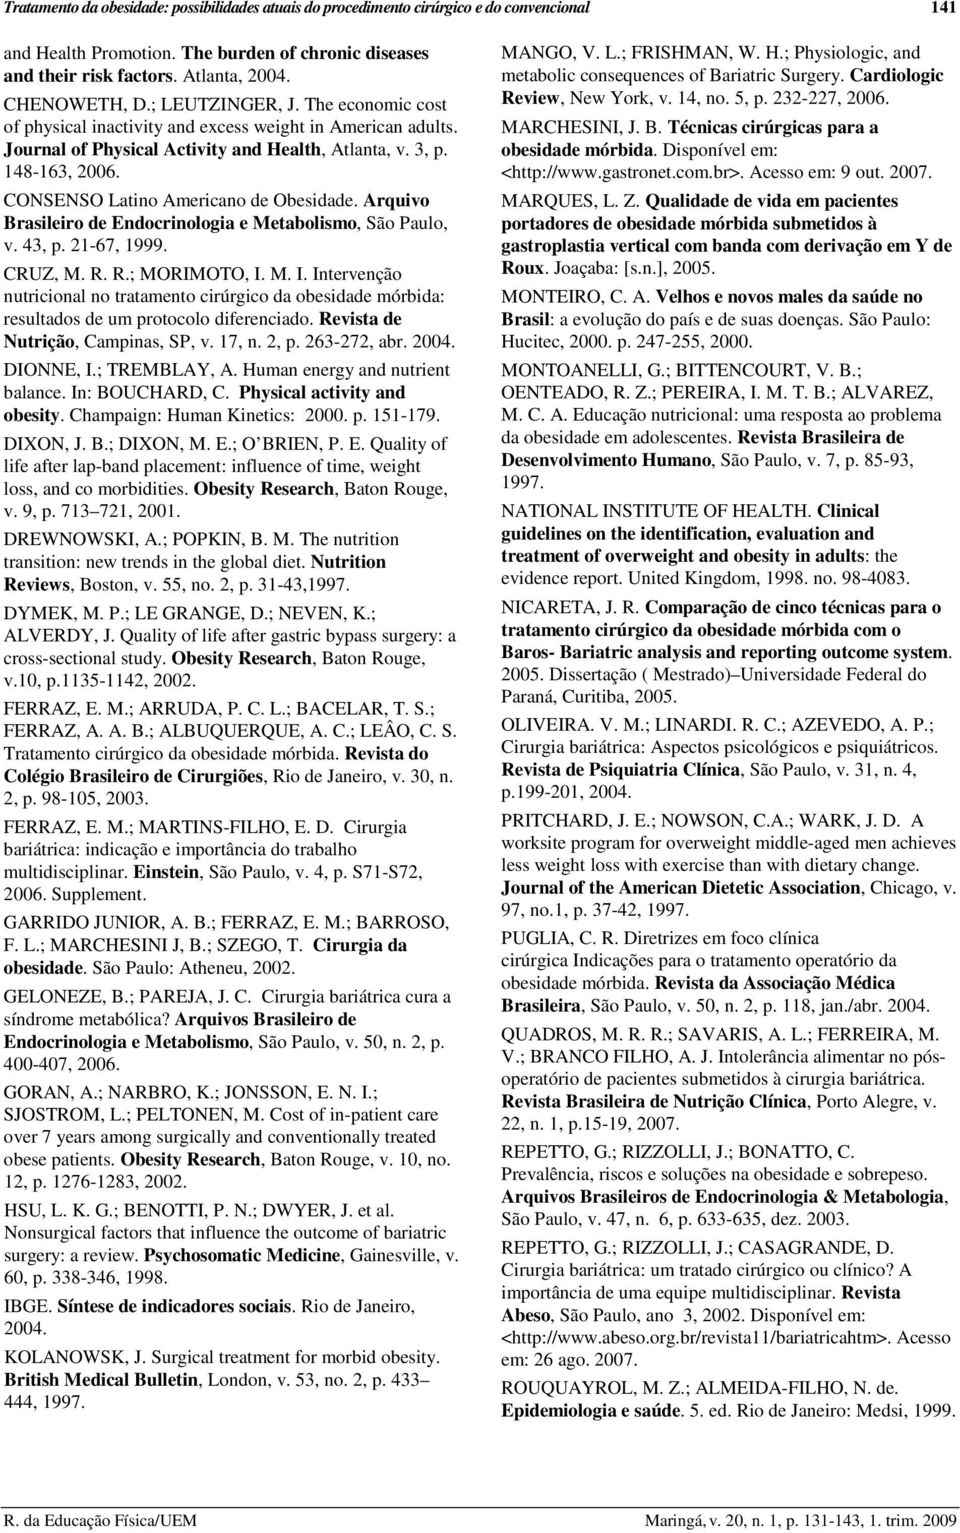 CONSENSO Latino Americano de Obesidade. Arquivo Brasileiro de Endocrinologia e Metabolismo, São Paulo, v. 43, p. 21-67, 1999. CRUZ, M. R. R.; MORIMOTO, I.